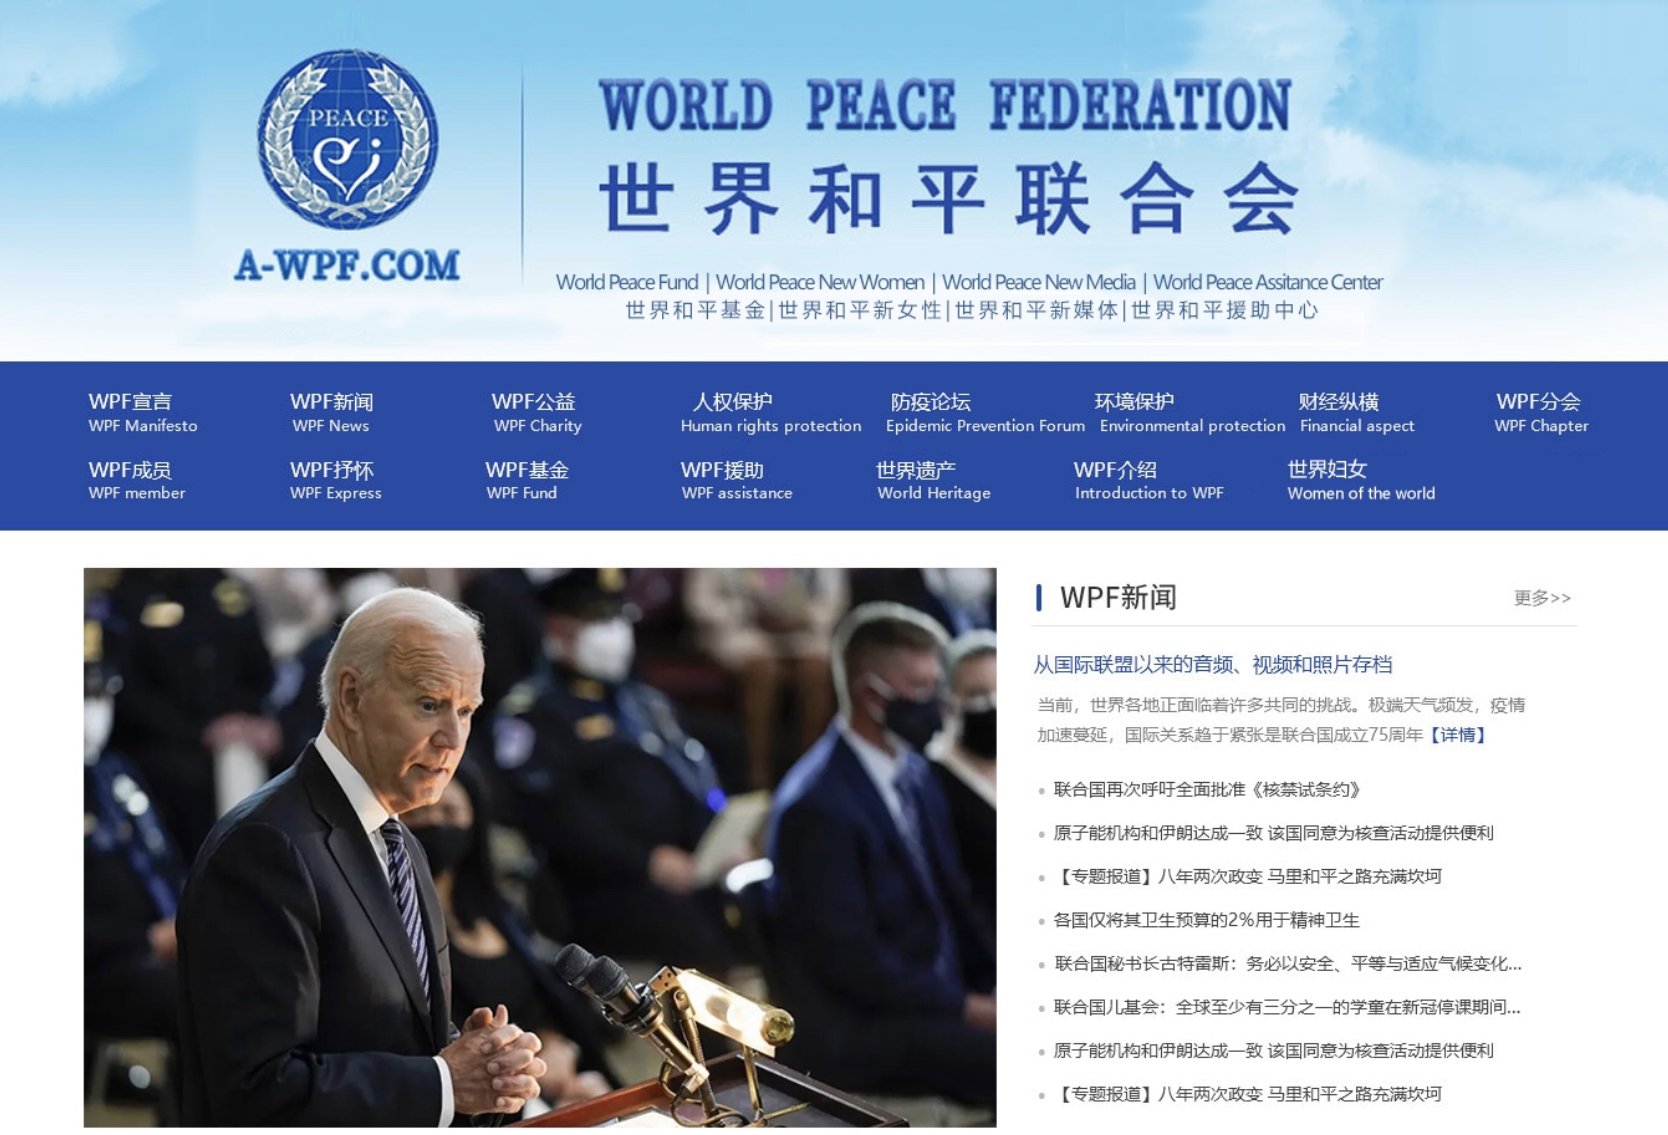 世界和平联合官网http://www.a-wpf.com网站预告